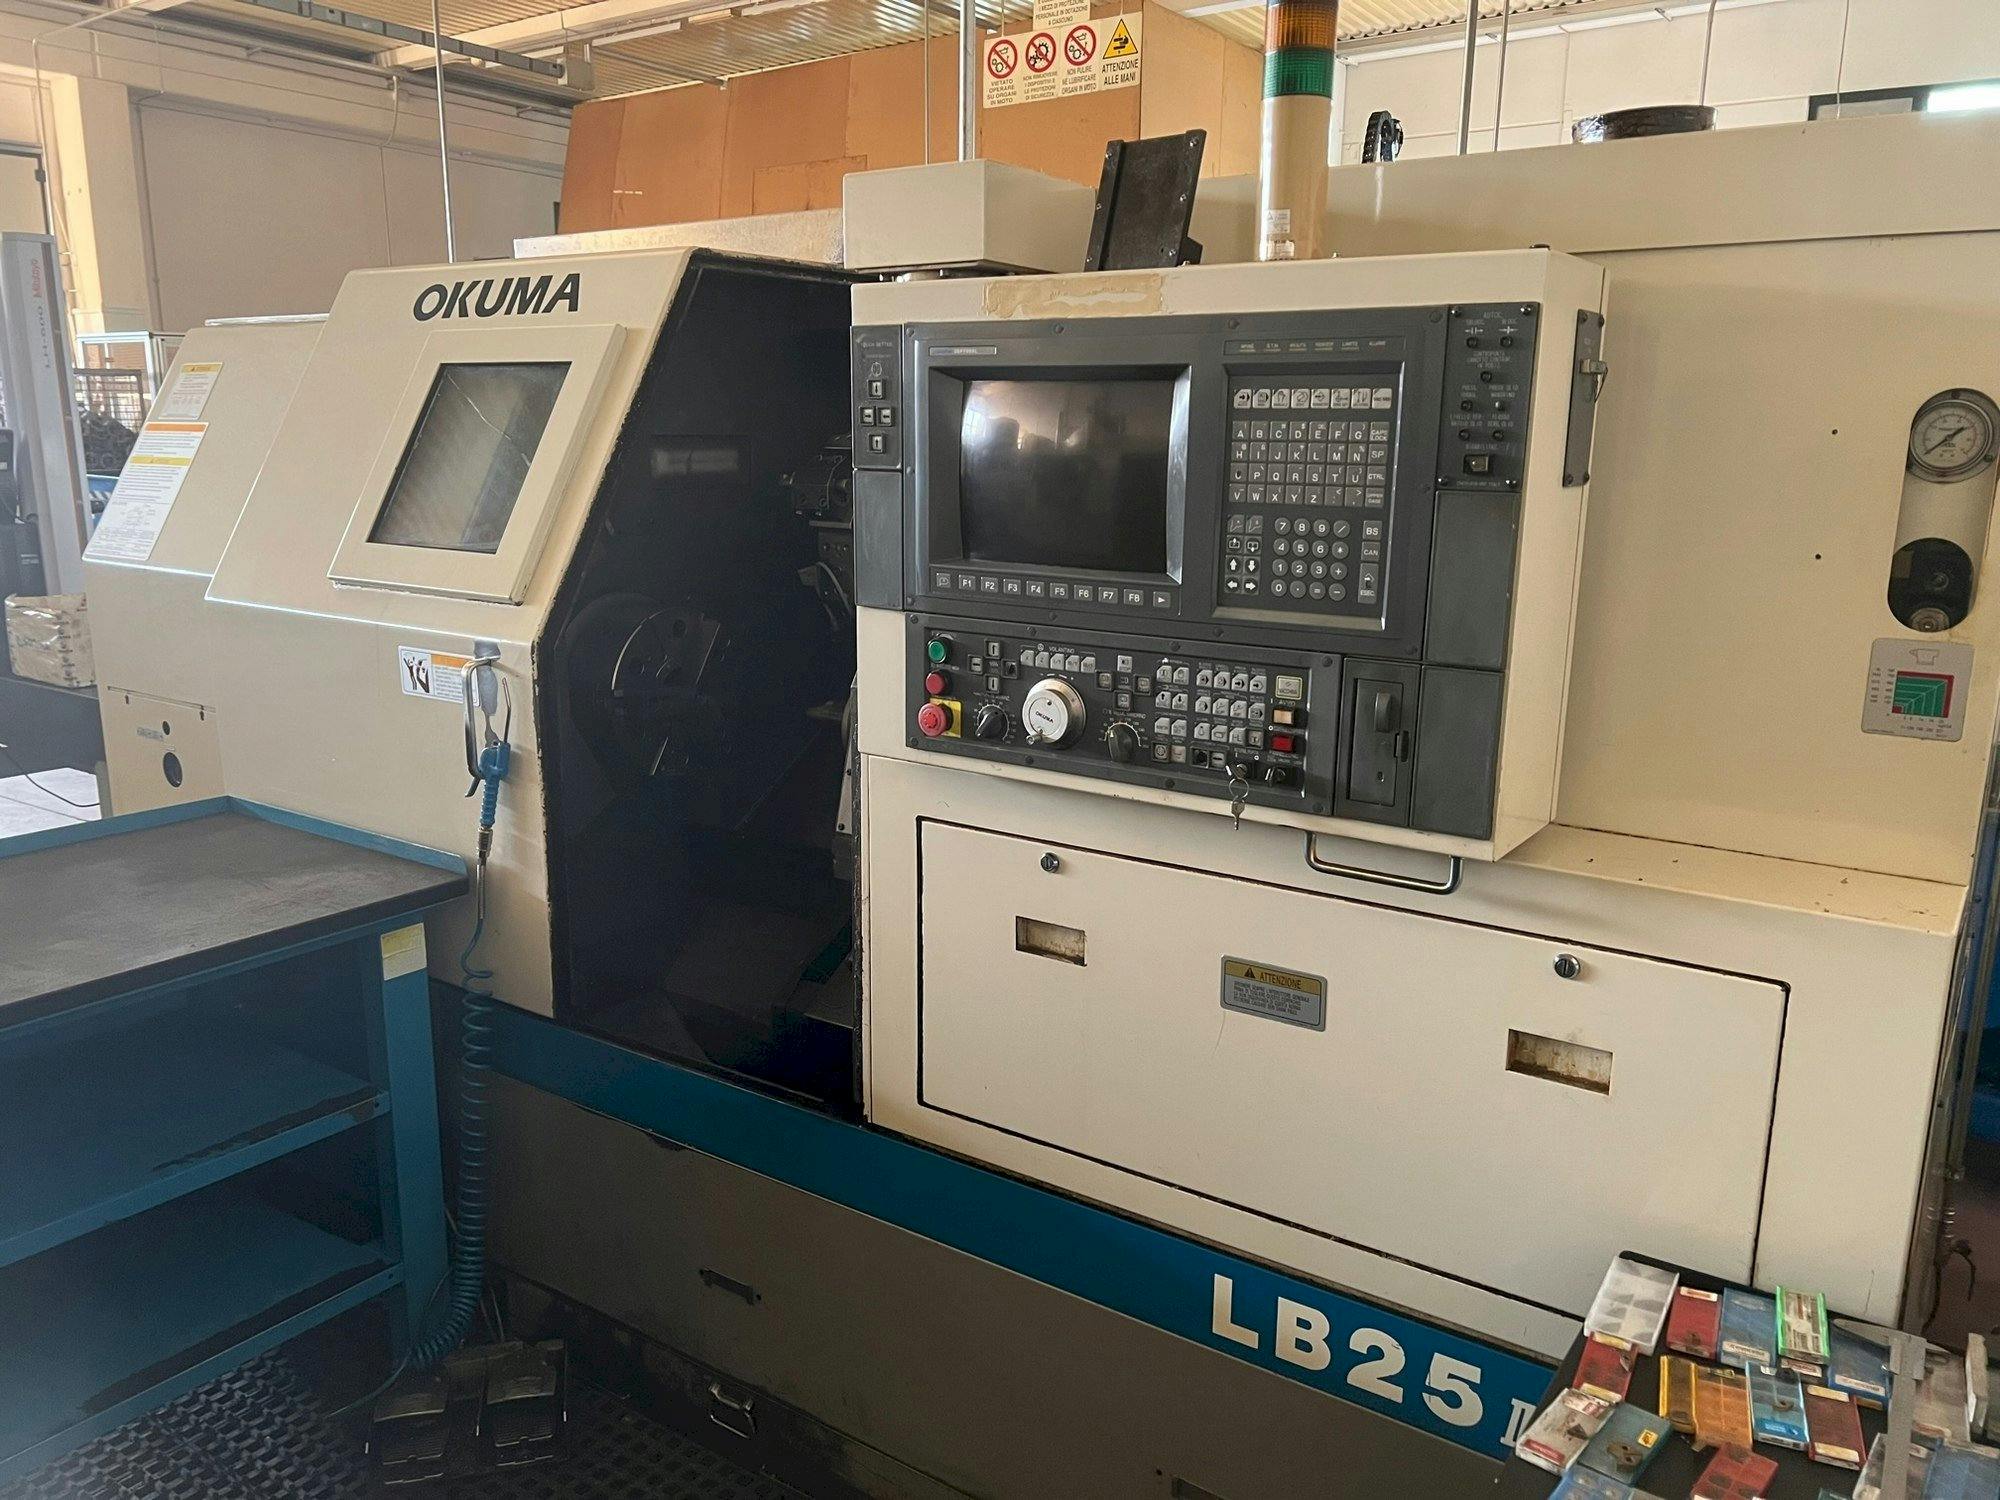 Frontansicht der Okuma LB 25 II  Maschine